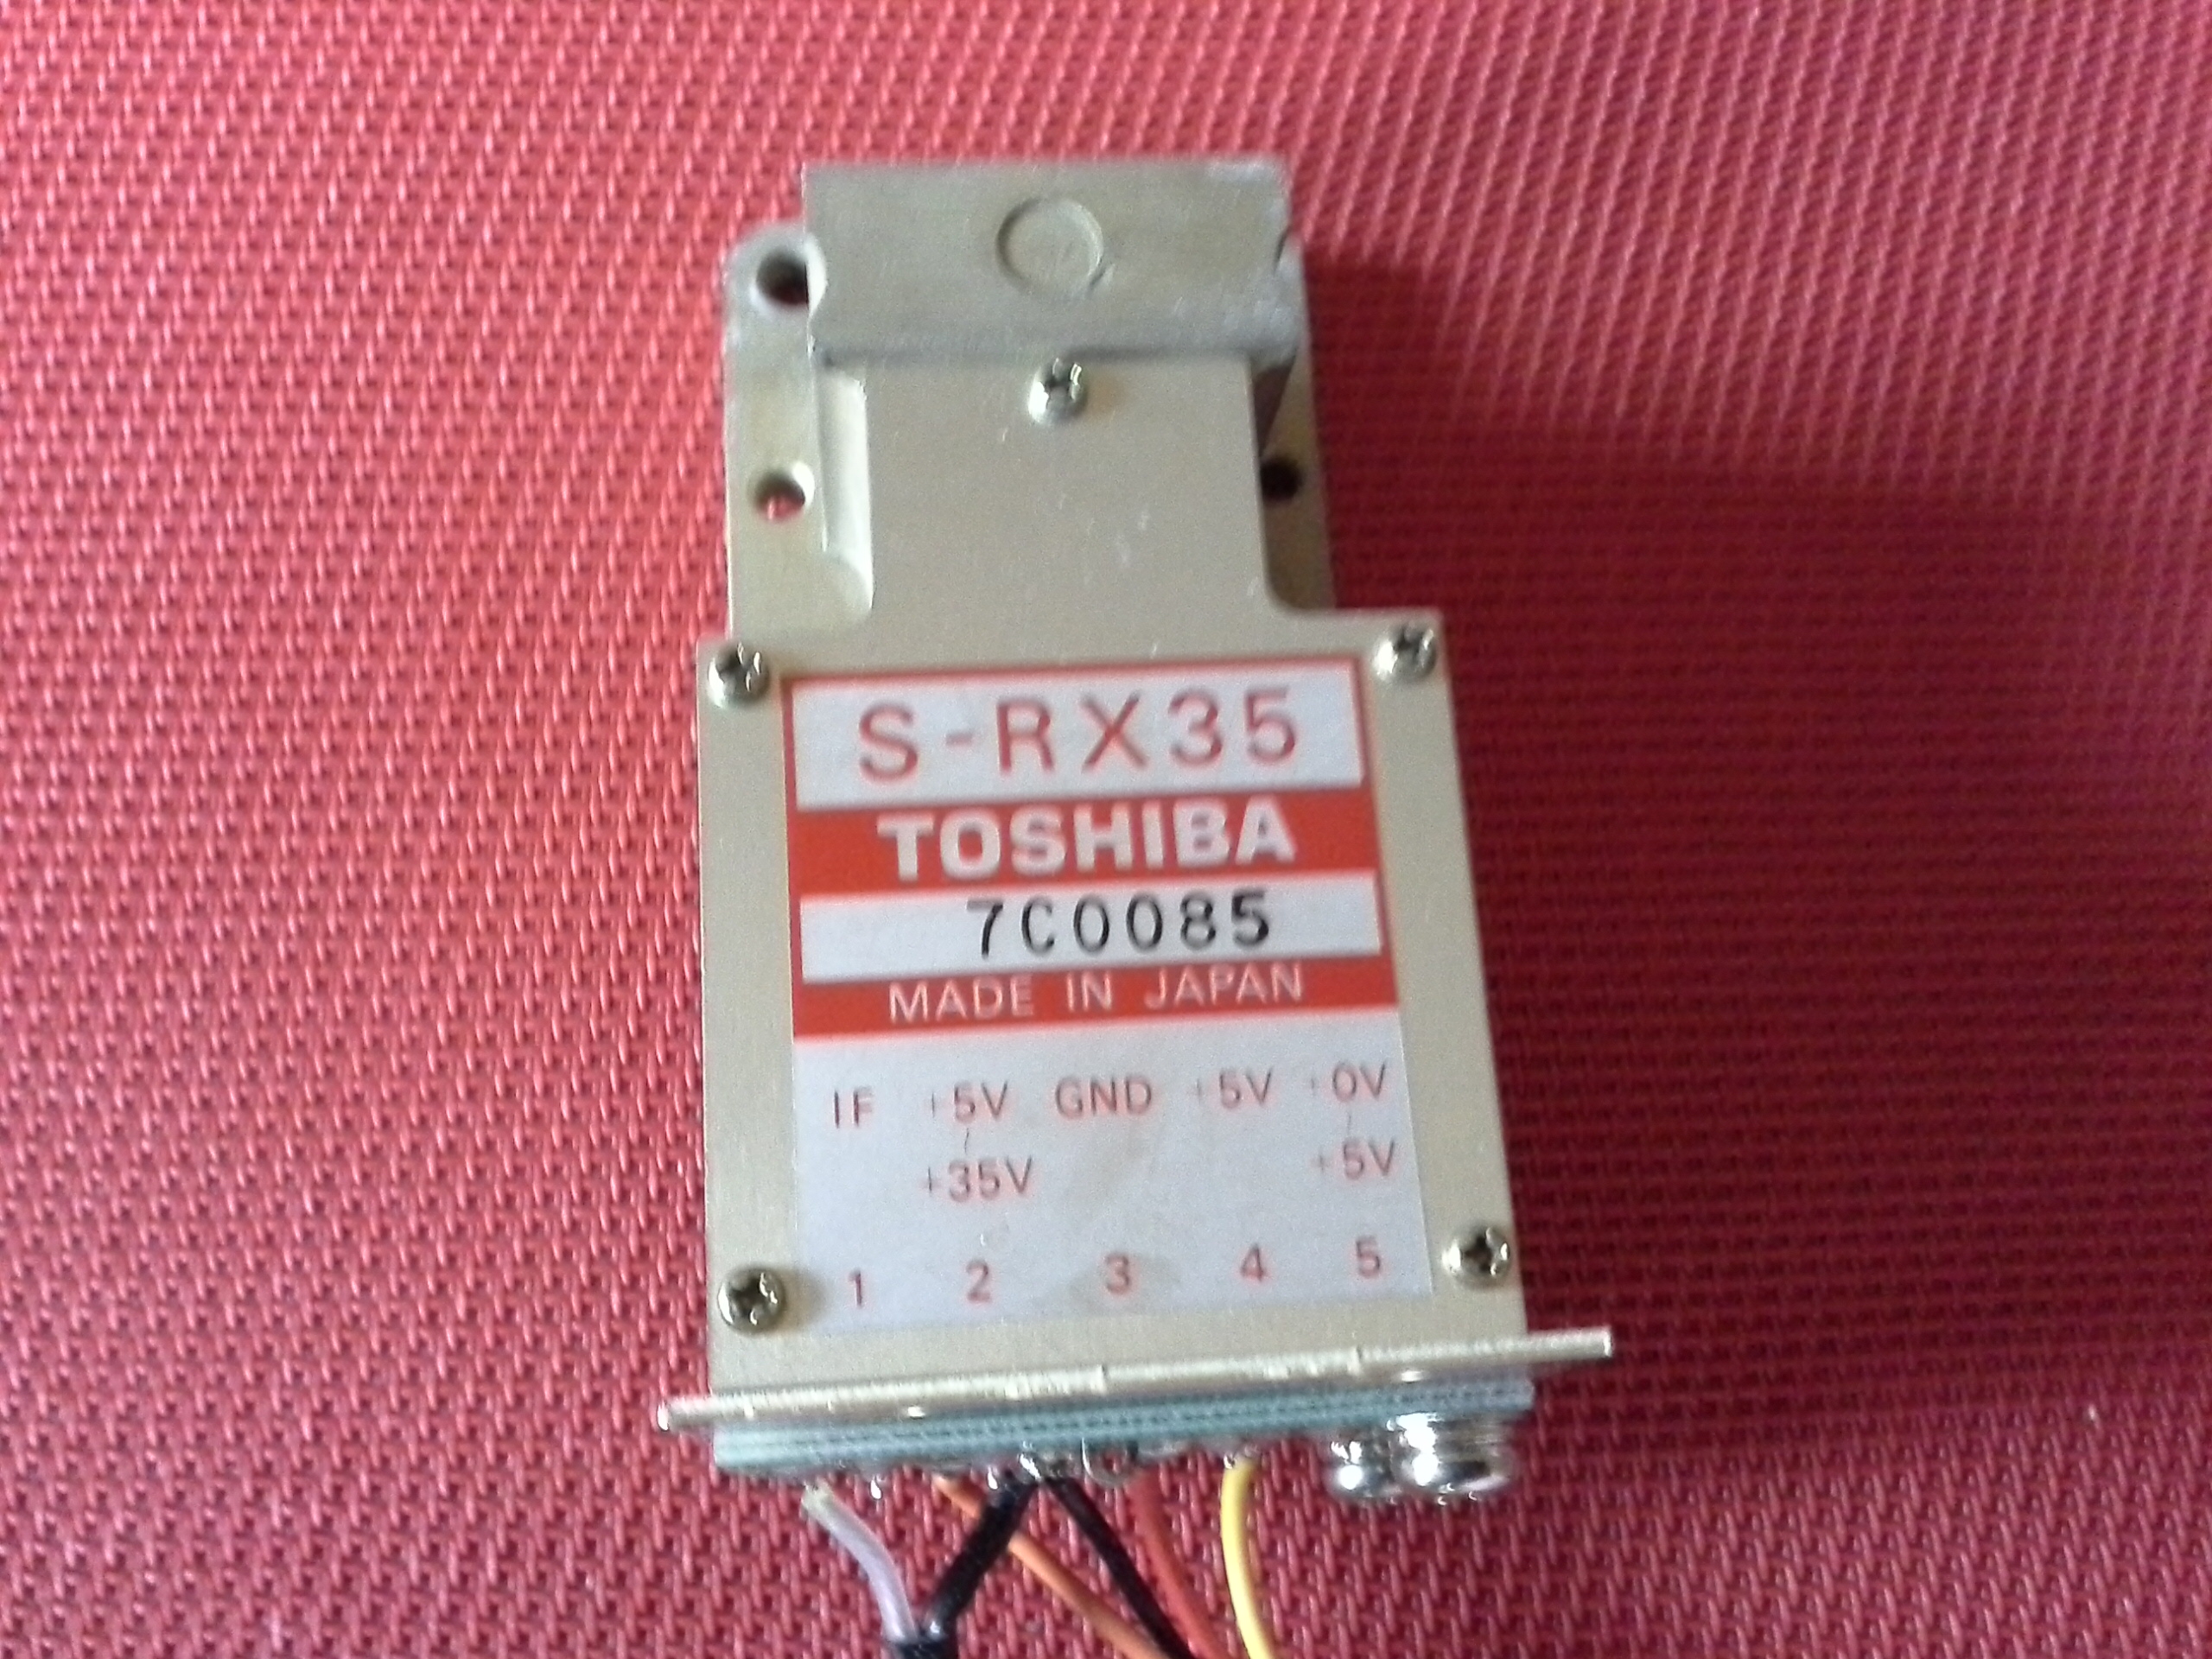 Toshiba S-RX 35 - 7C0085 für Schiffsradar Racal